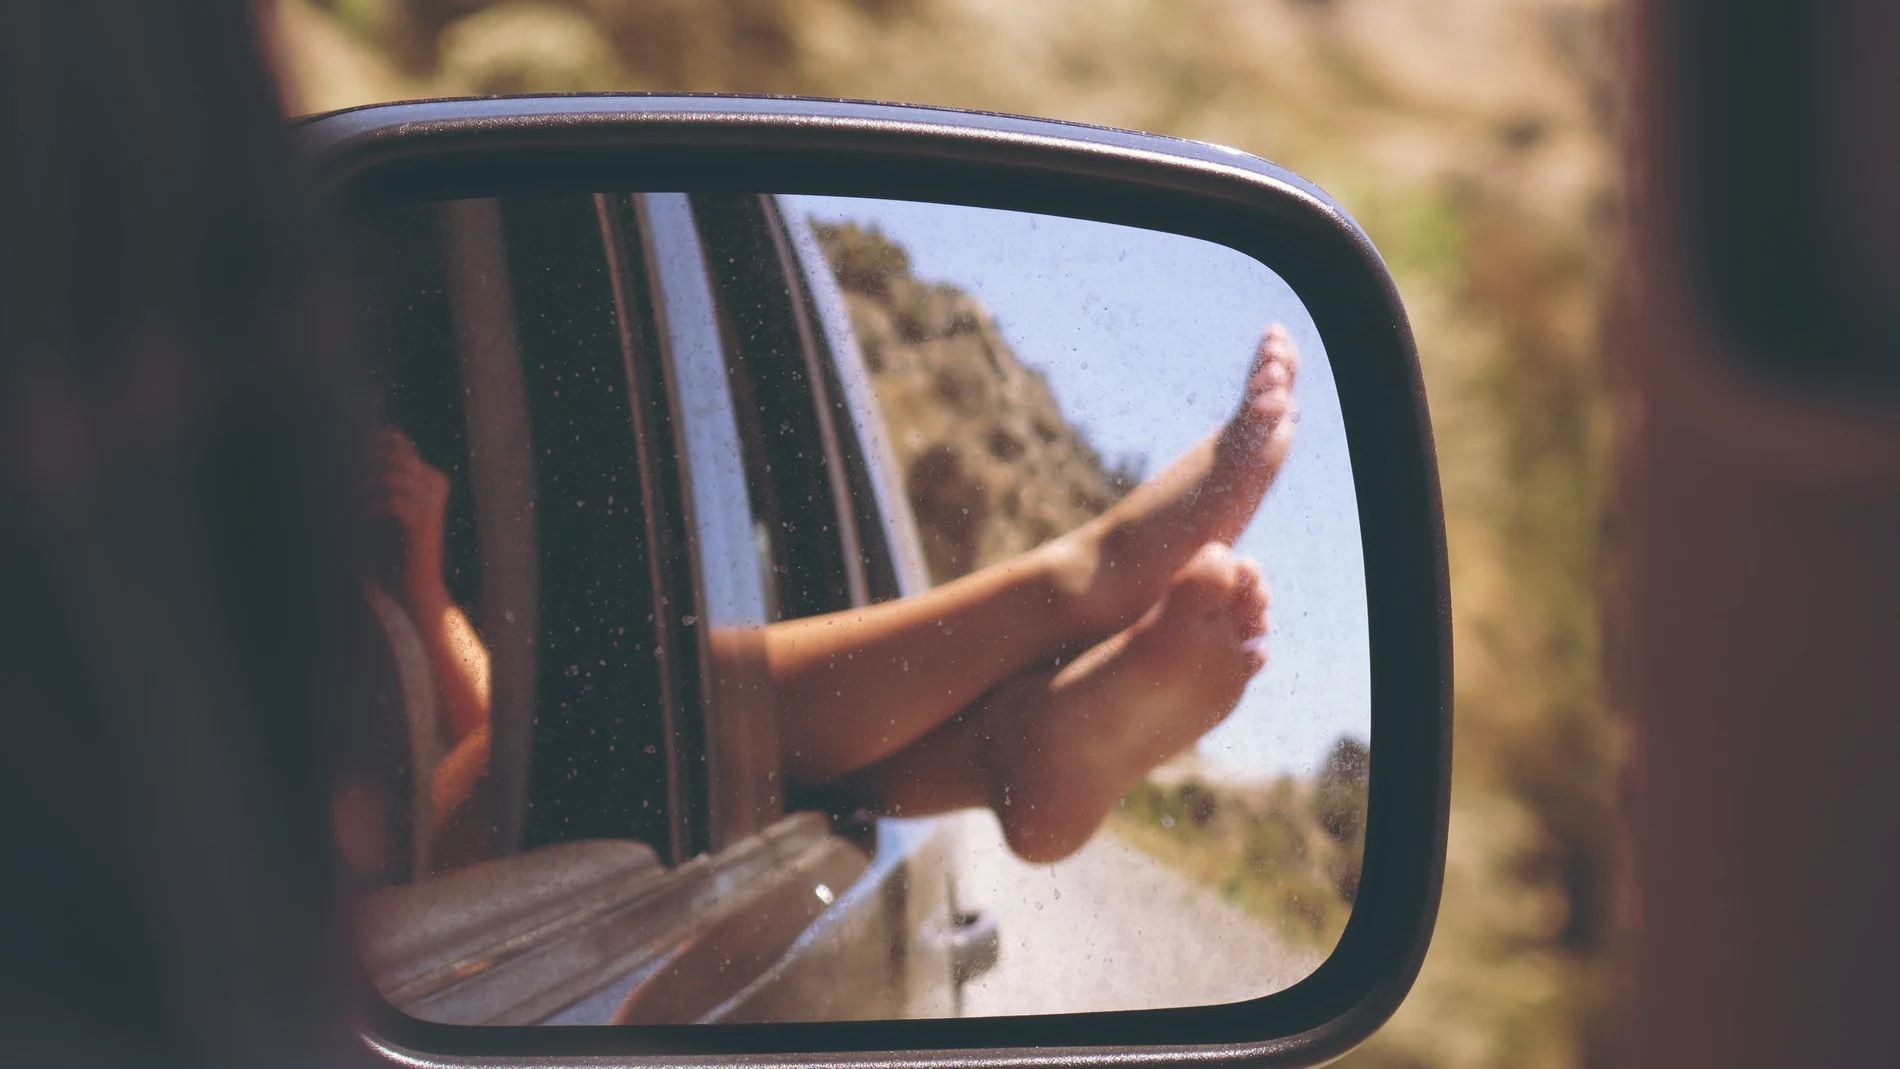 En la imagen, una mujer saca los pies por la ventanilla del coche.